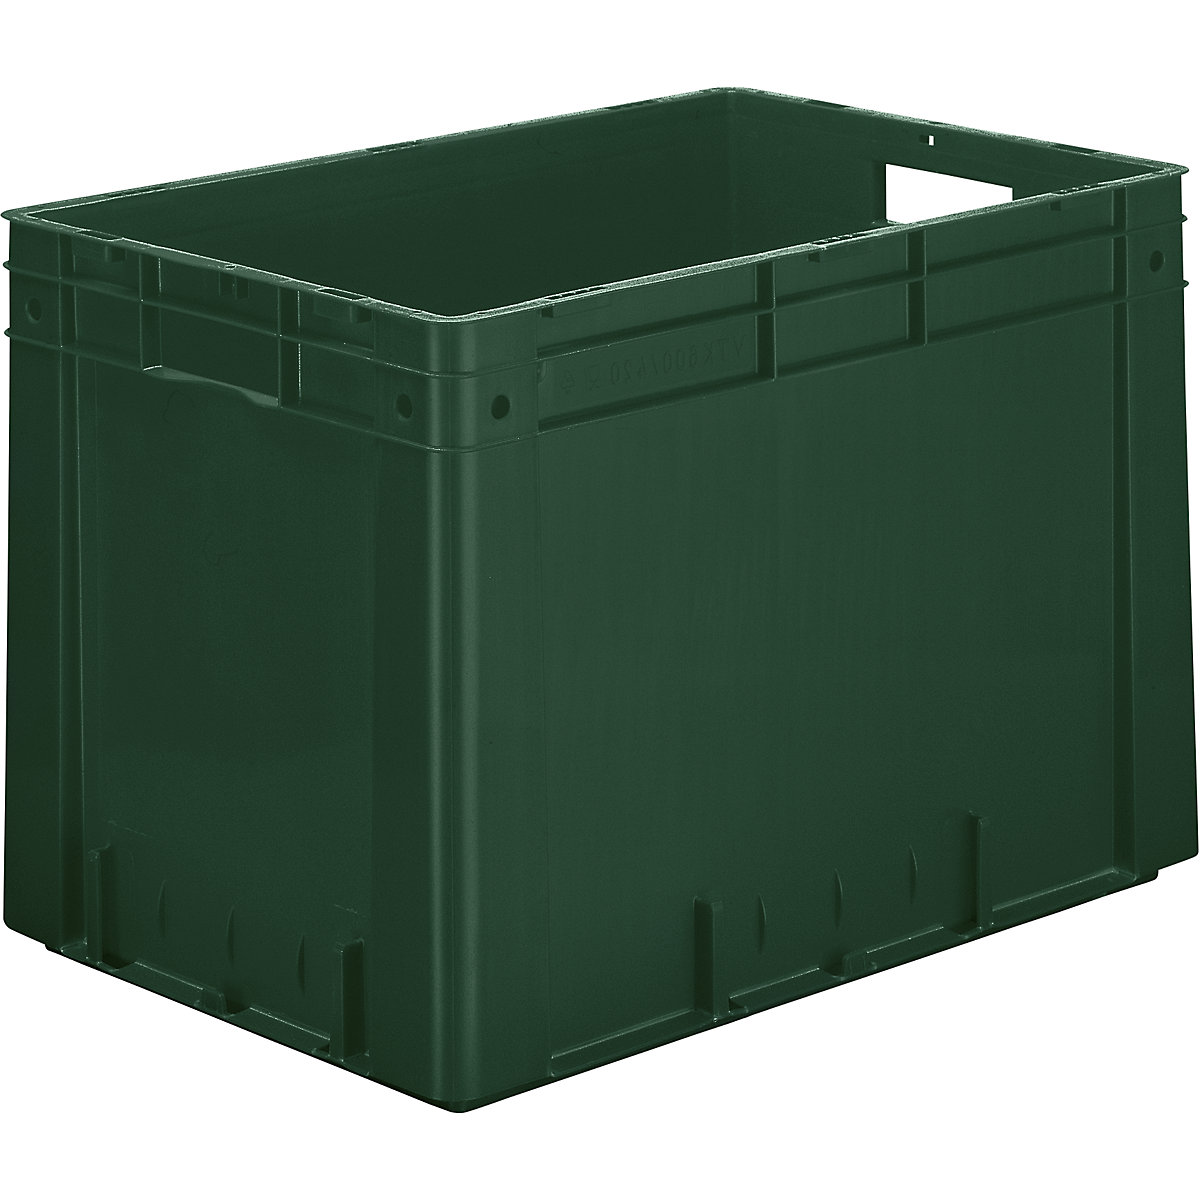 Schwerlast-Euro-Behälter, Polypropylen, Volumen 80 l, LxBxH 600 x 400 x 420 mm, Wände geschlossen, Boden geschlossen, grün, VE 2 Stk-5